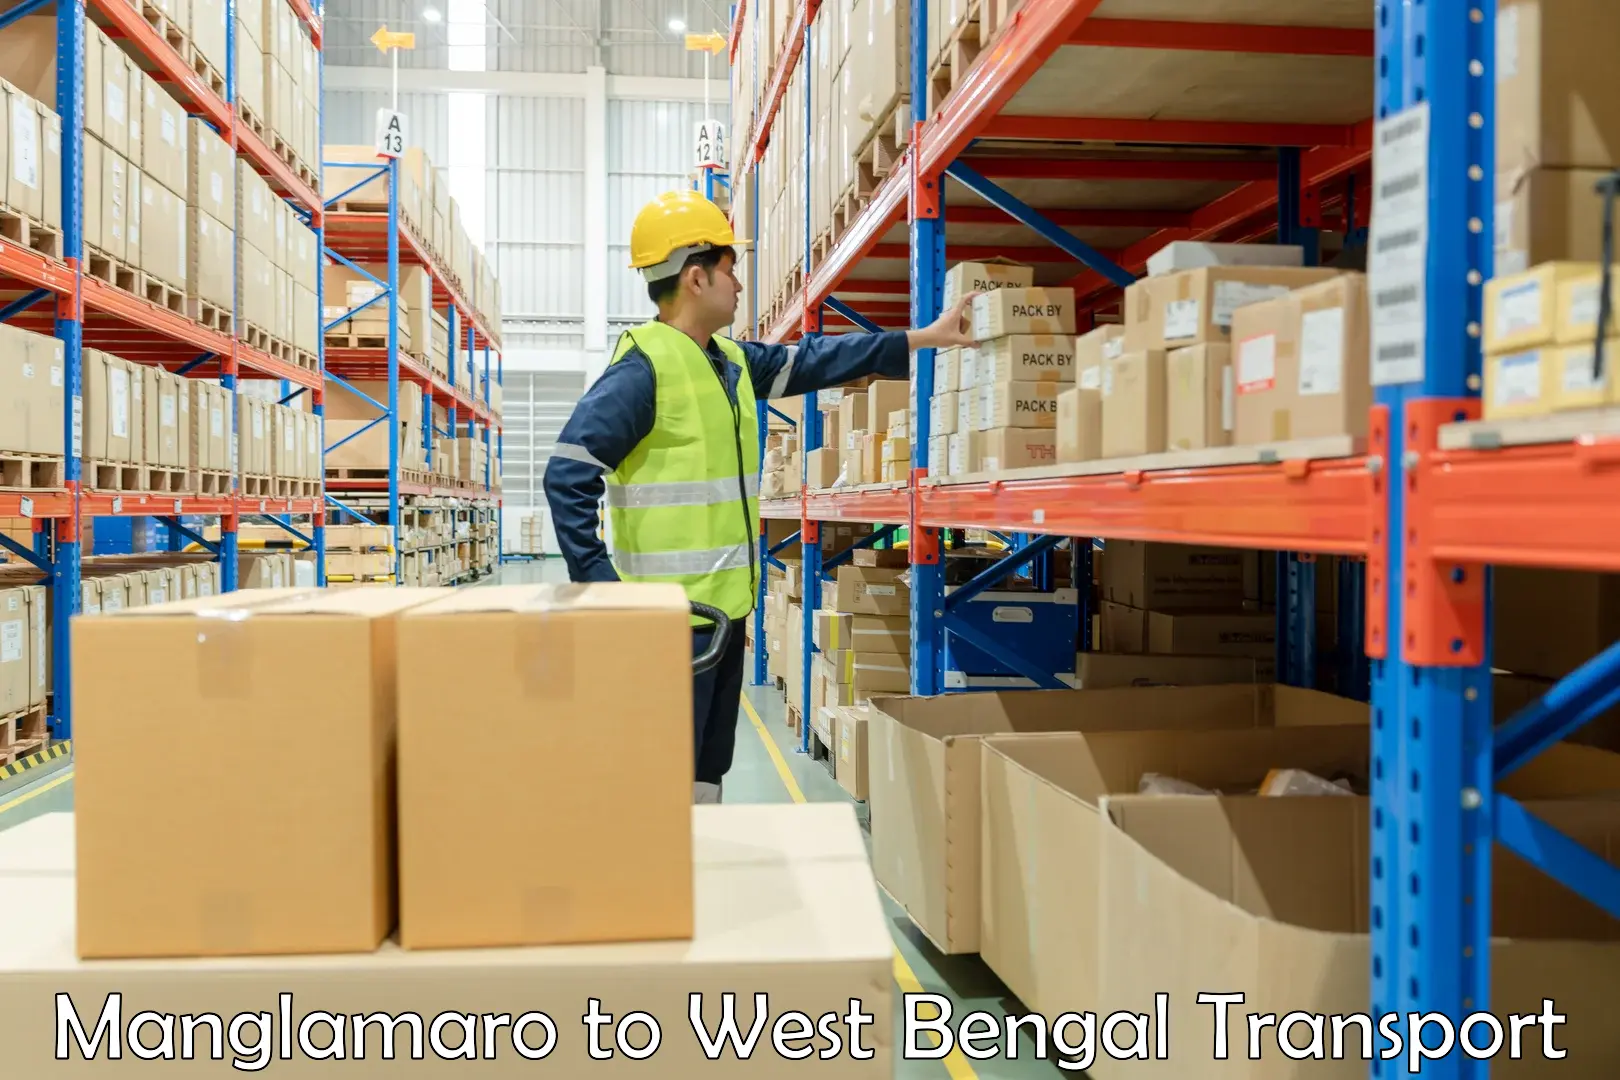 Shipping partner Manglamaro to Manteswar